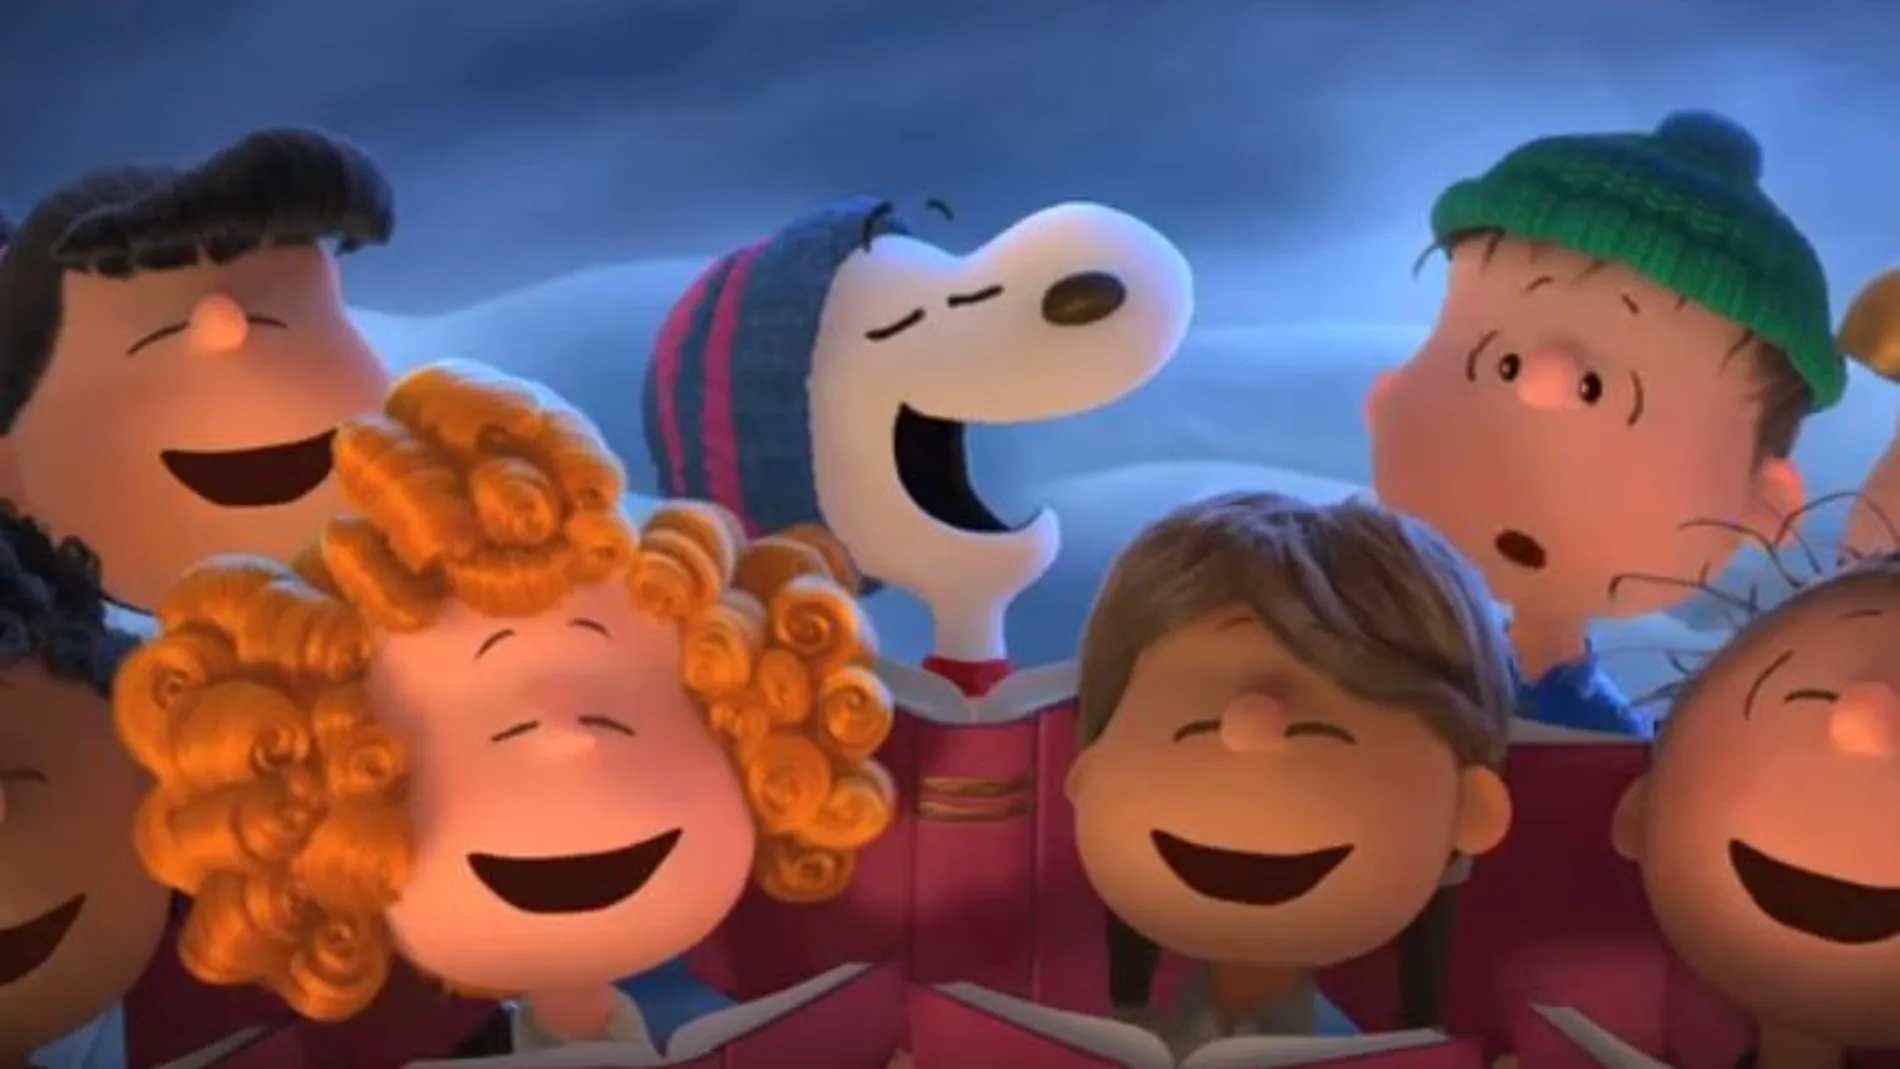 «Carlitos y Snoopy: la película de Peanuts», se estrena este 25 de diciembre